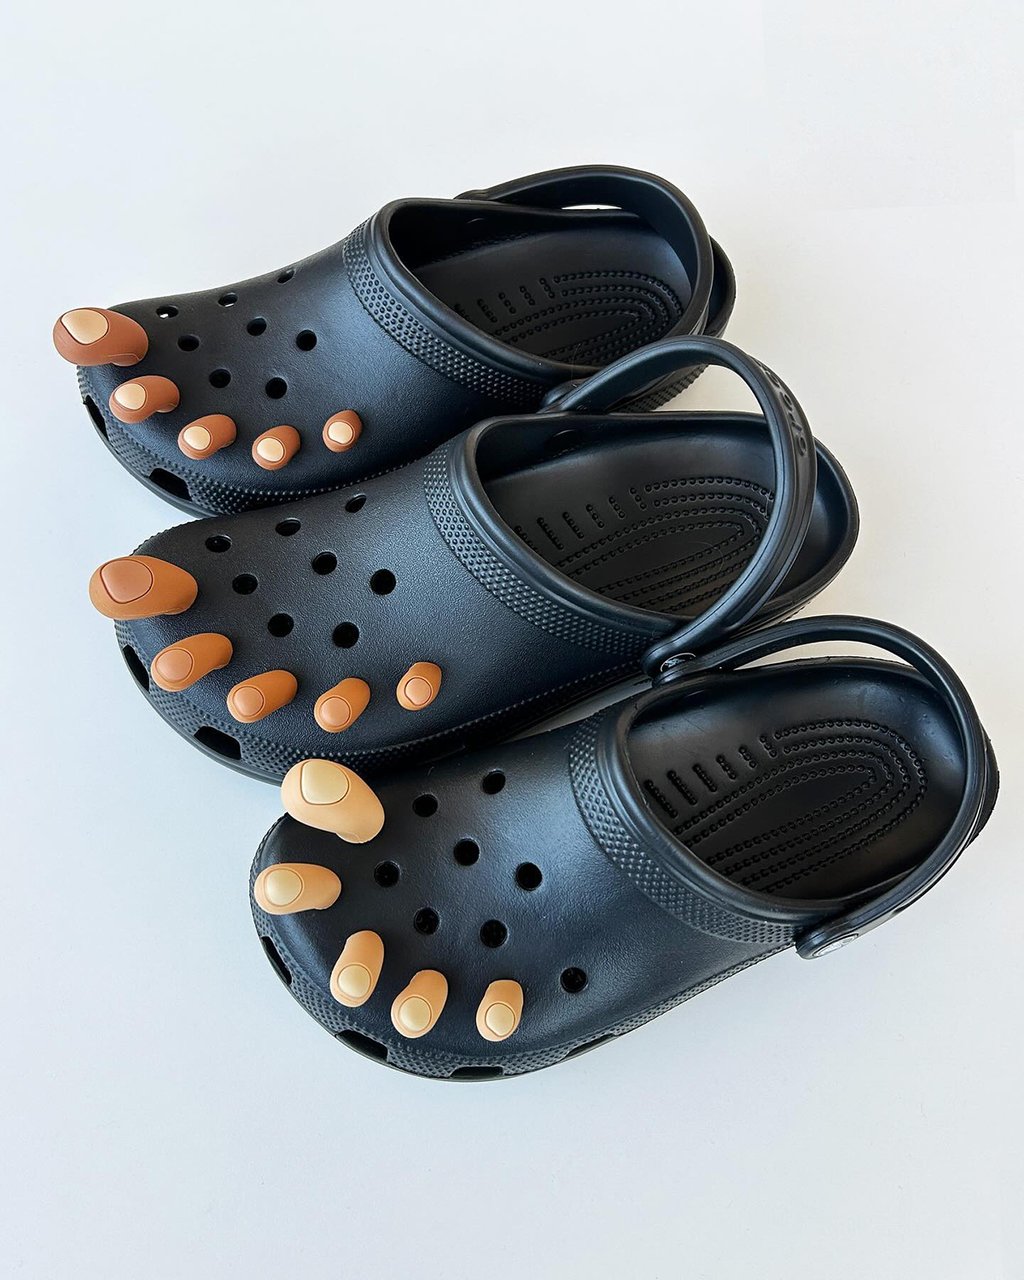 Croc lance des accessoires insolites en forme d'orteils